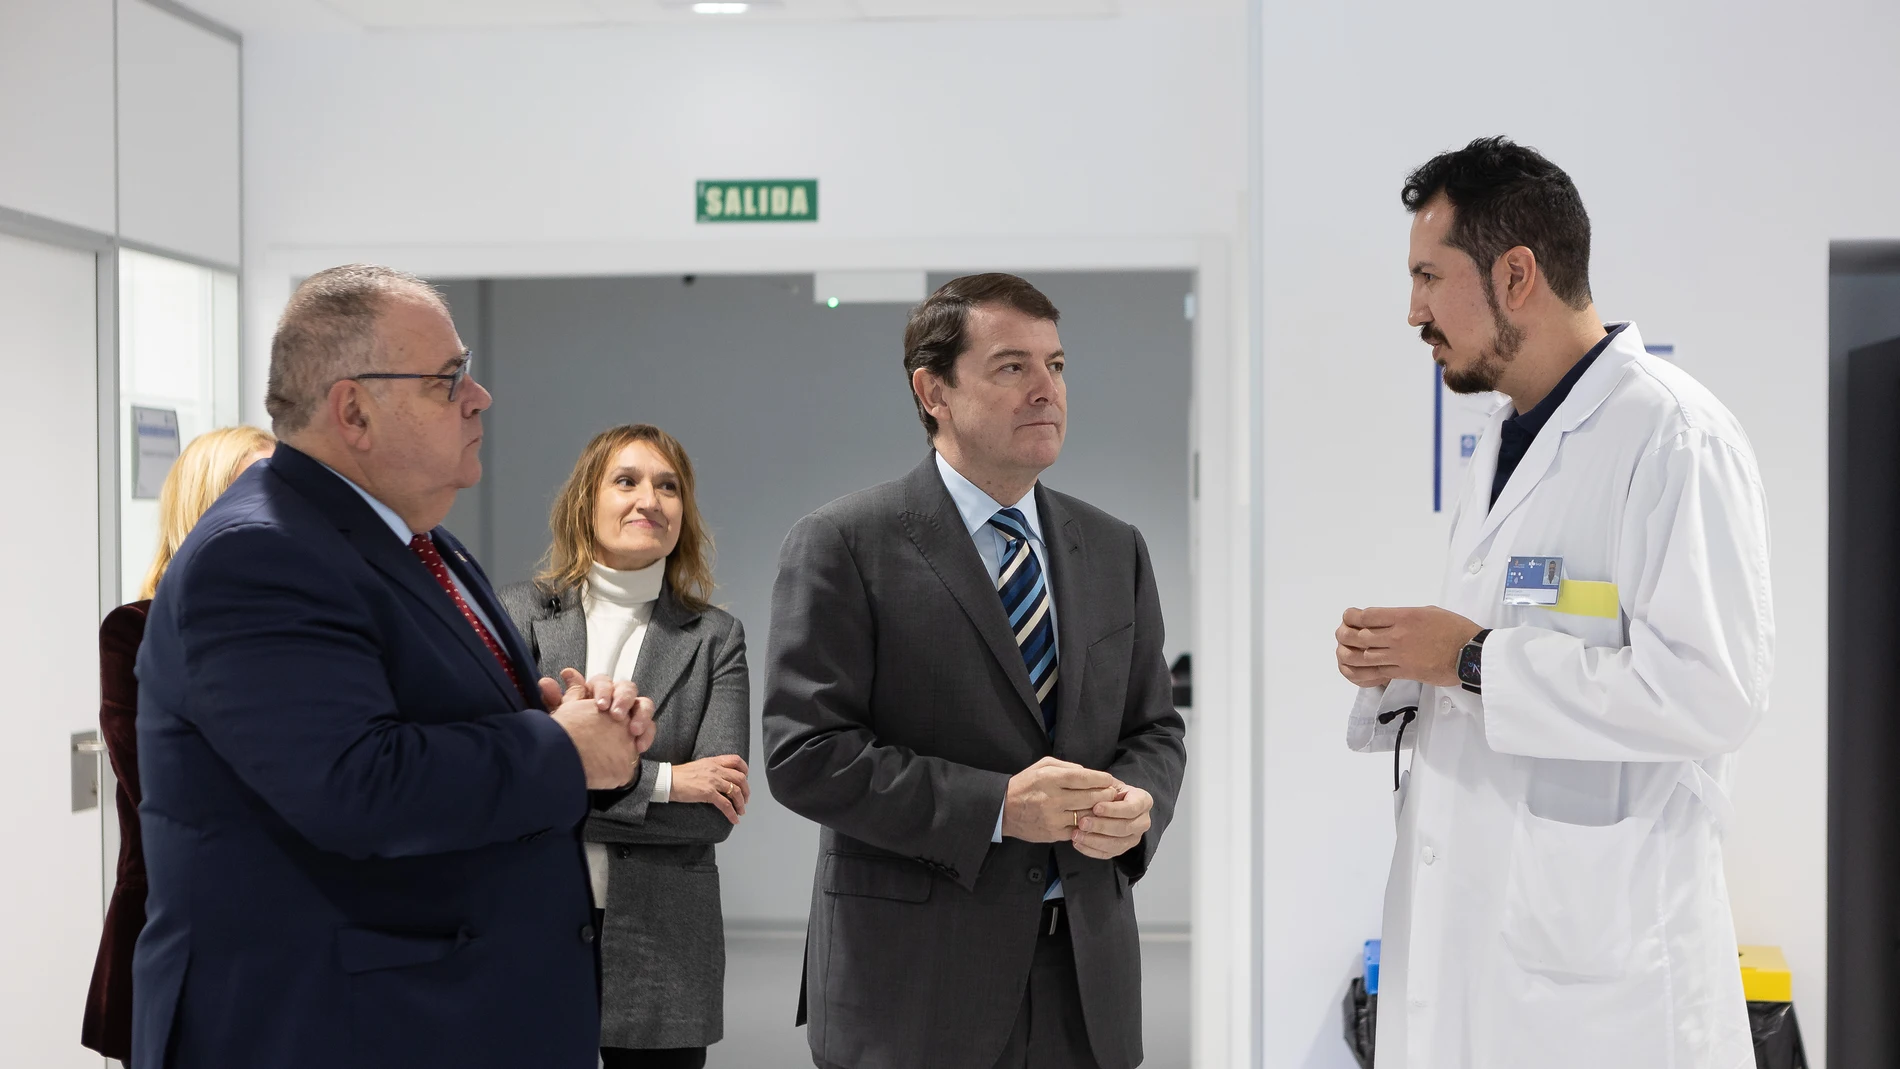 El presidente de la Junta, Alfonso fernández mañueco, visita, junto a los consejeros Alejandro Vázquez y Rocío Lucas, el Complejo Asistencial-Hospital Universitario Santa Bárbara de Soria